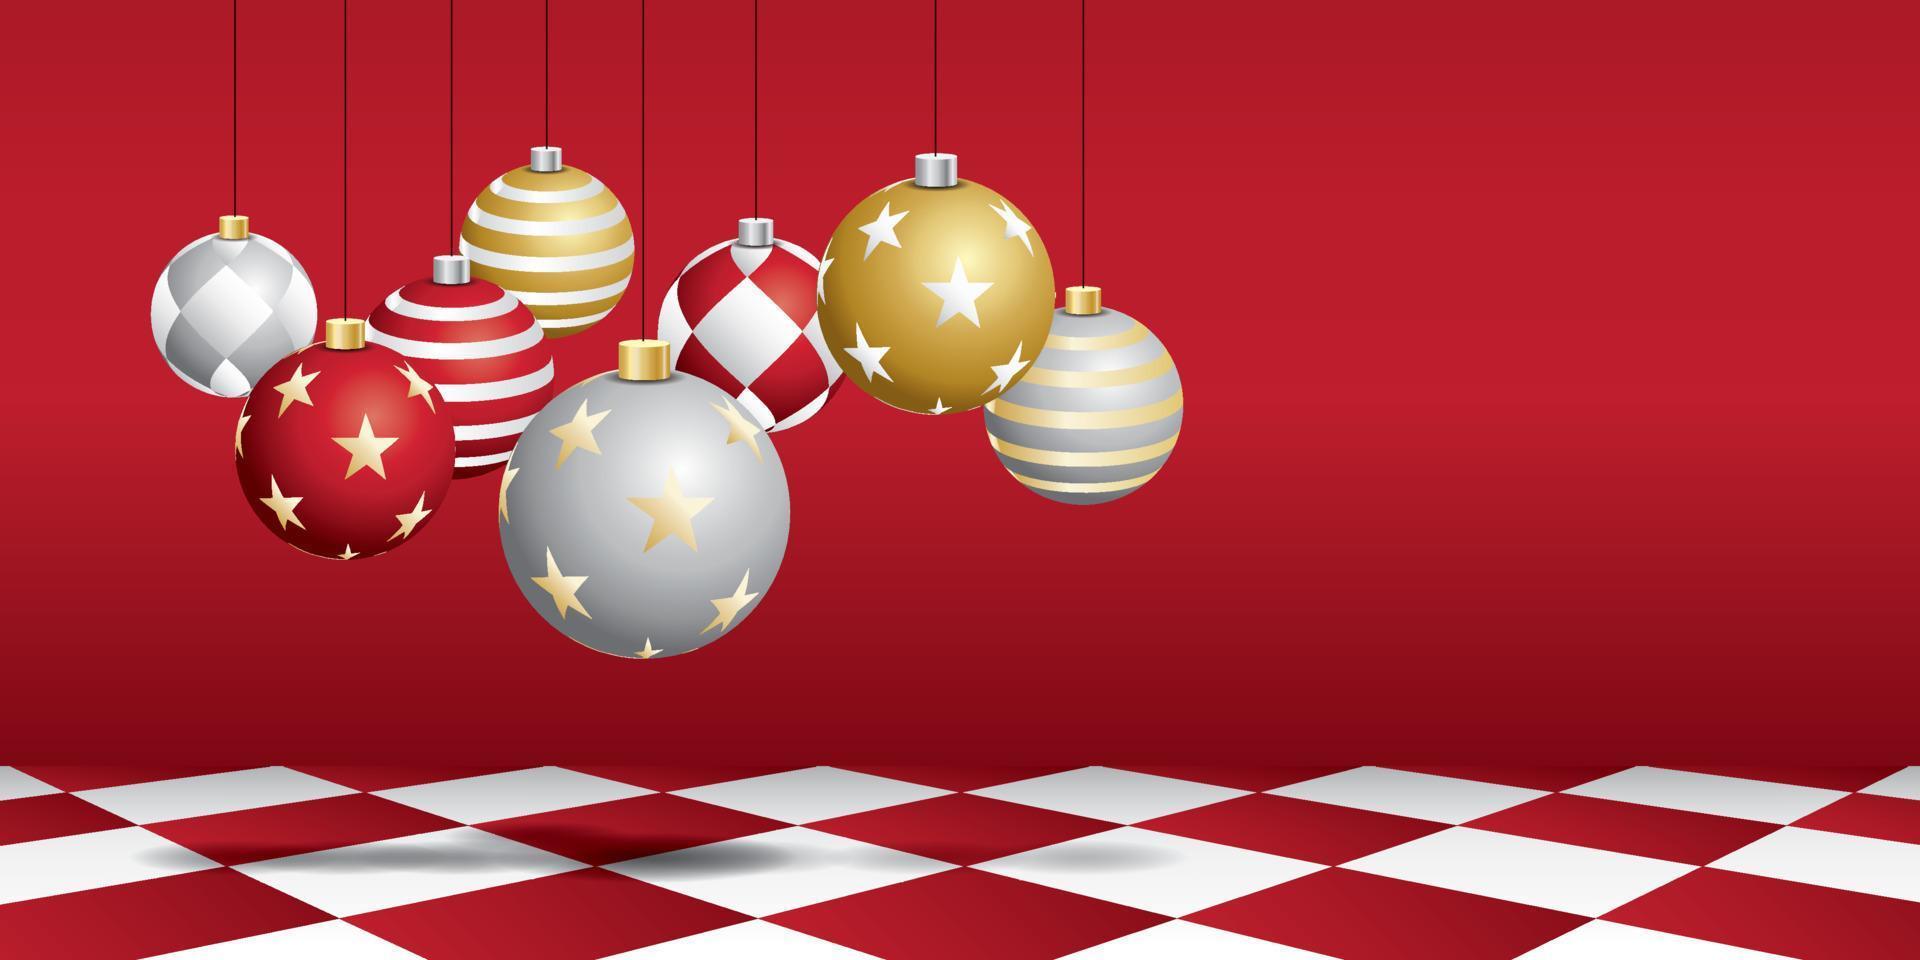 juego de bolas de navidad con pared roja y piso de ajedrez rojo. vector de escena navideña.